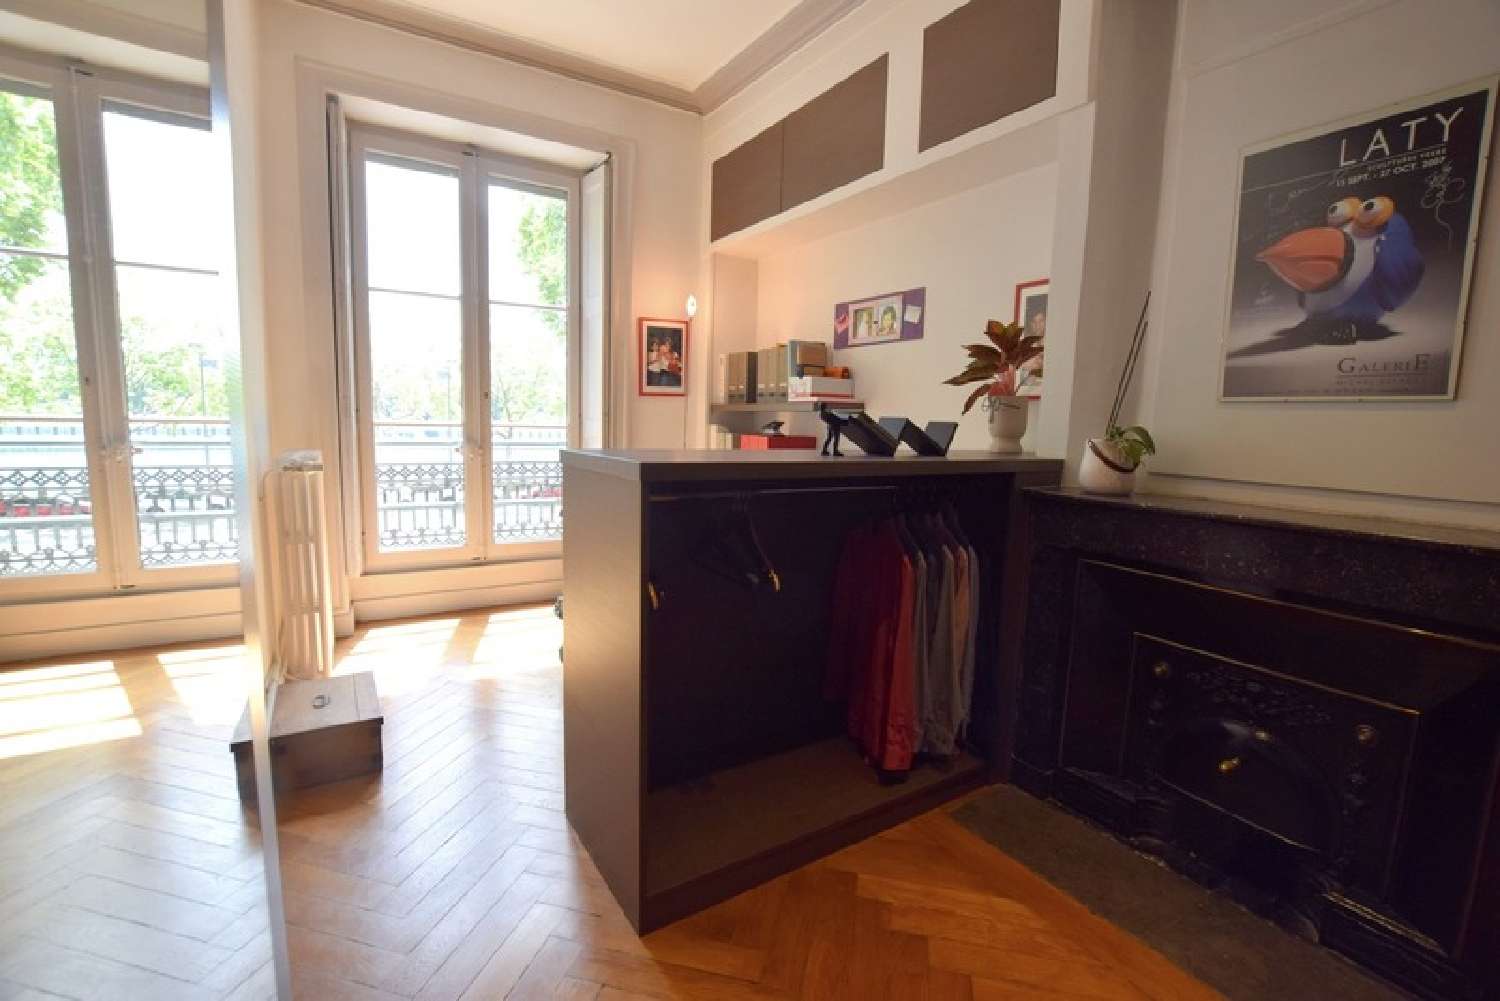  kaufen Wohnung/ Apartment Lyon 2e Arrondissement Rhône 6